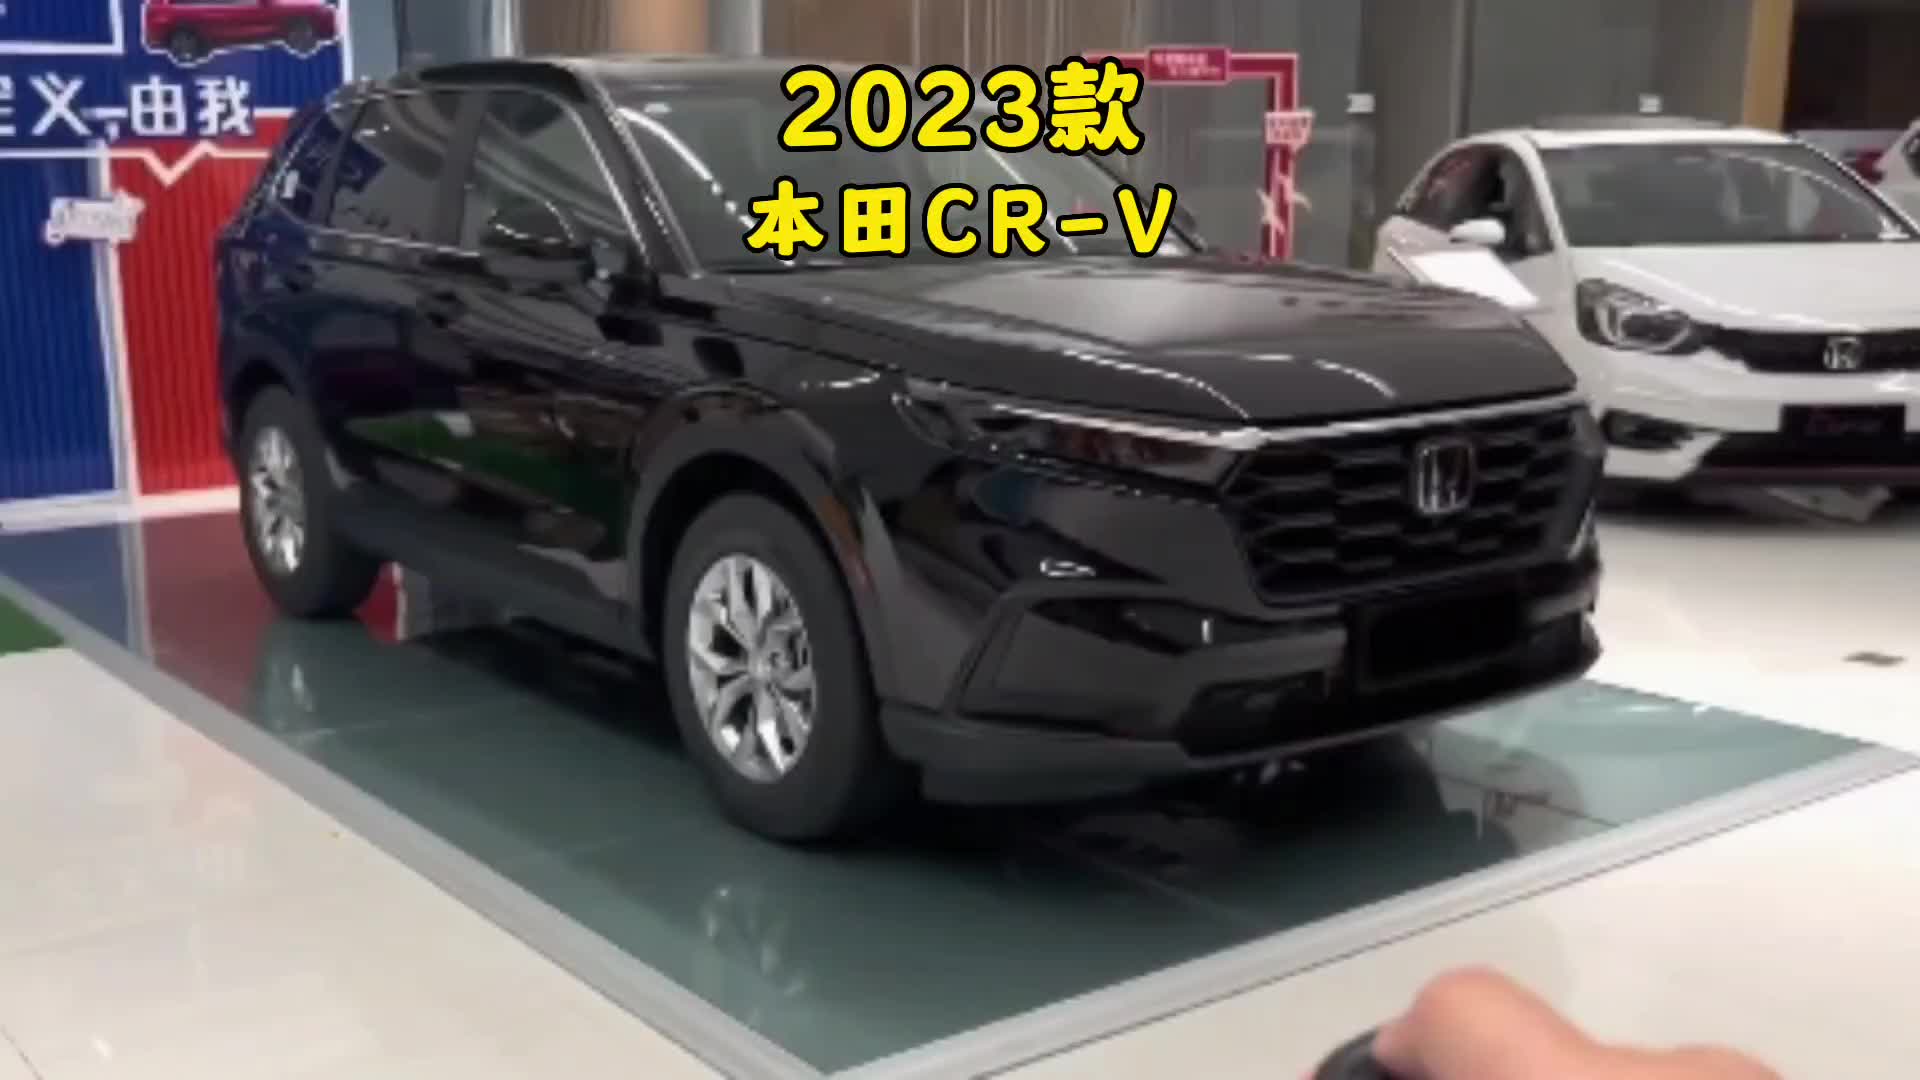 2023款本田CRV配置介绍和用车成本参考#本田crv #本田 #爆款车型